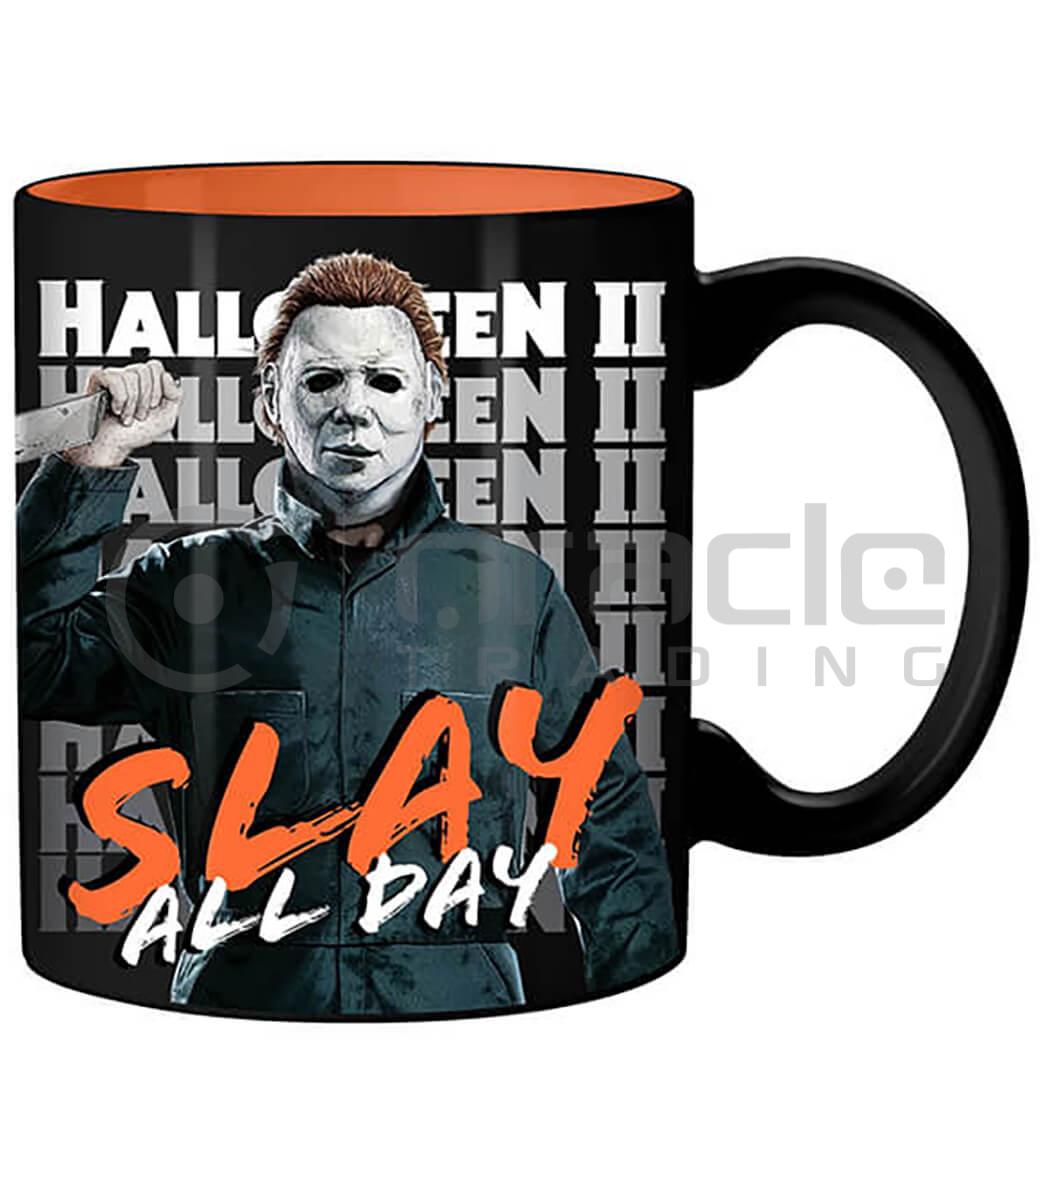 Halloween II Jumbo Mug - Slay